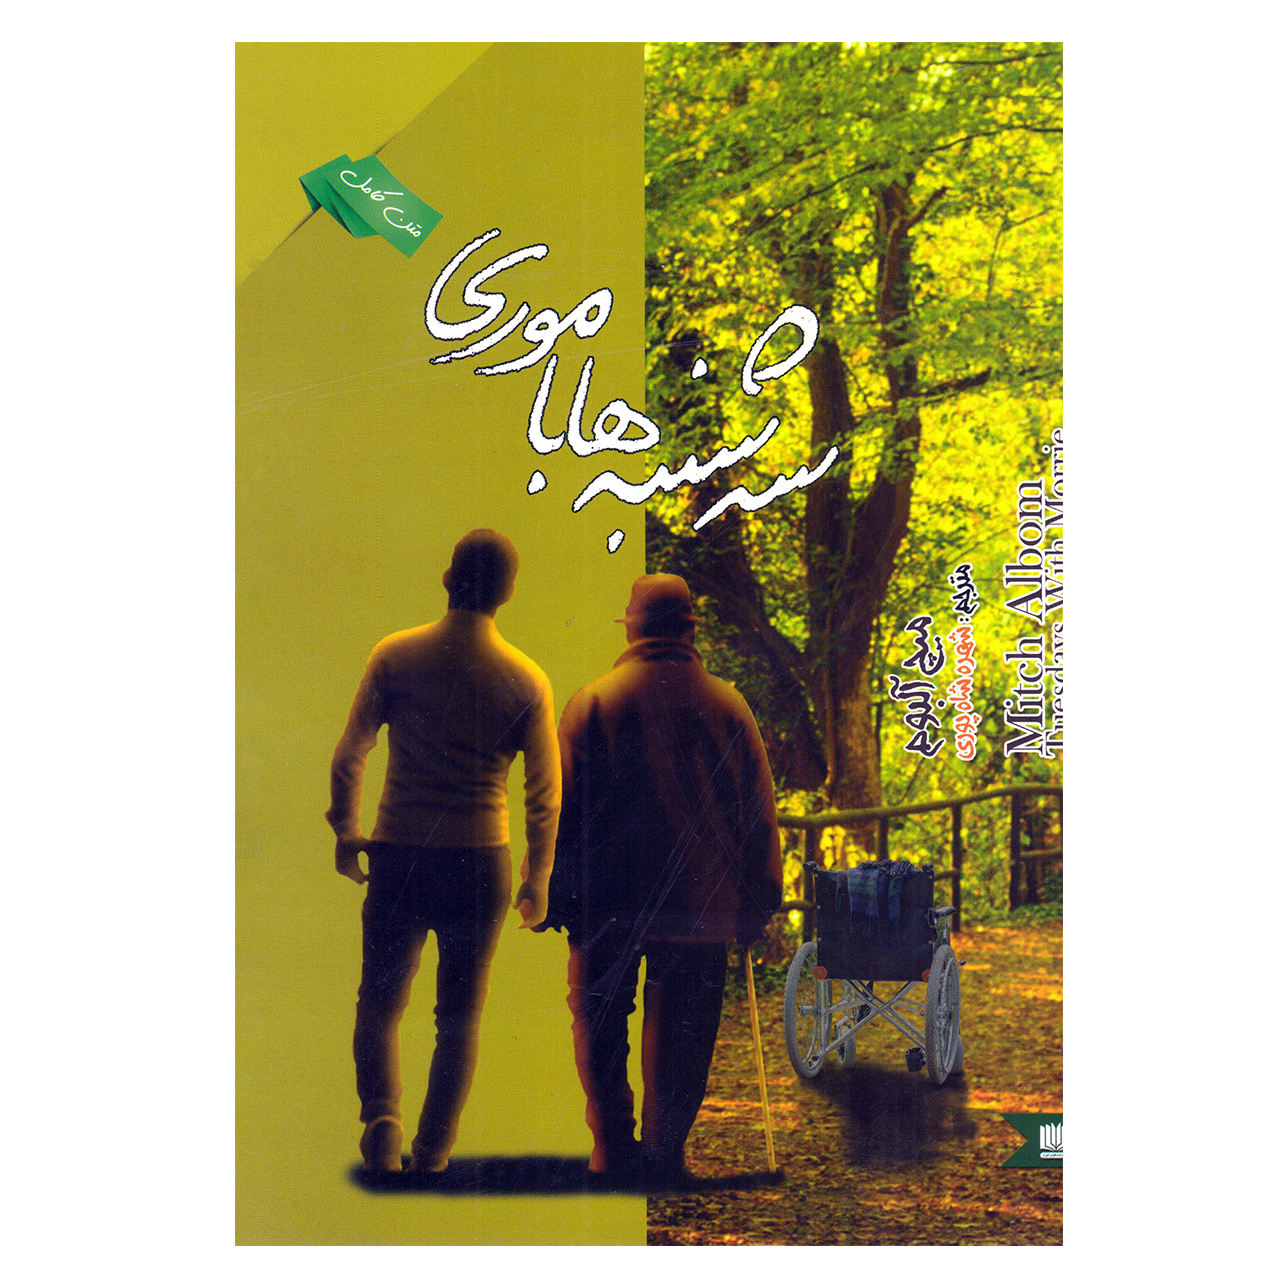 کتاب سه شنبه ها با موری اثر میچ آلبوم نشر نگین ایران